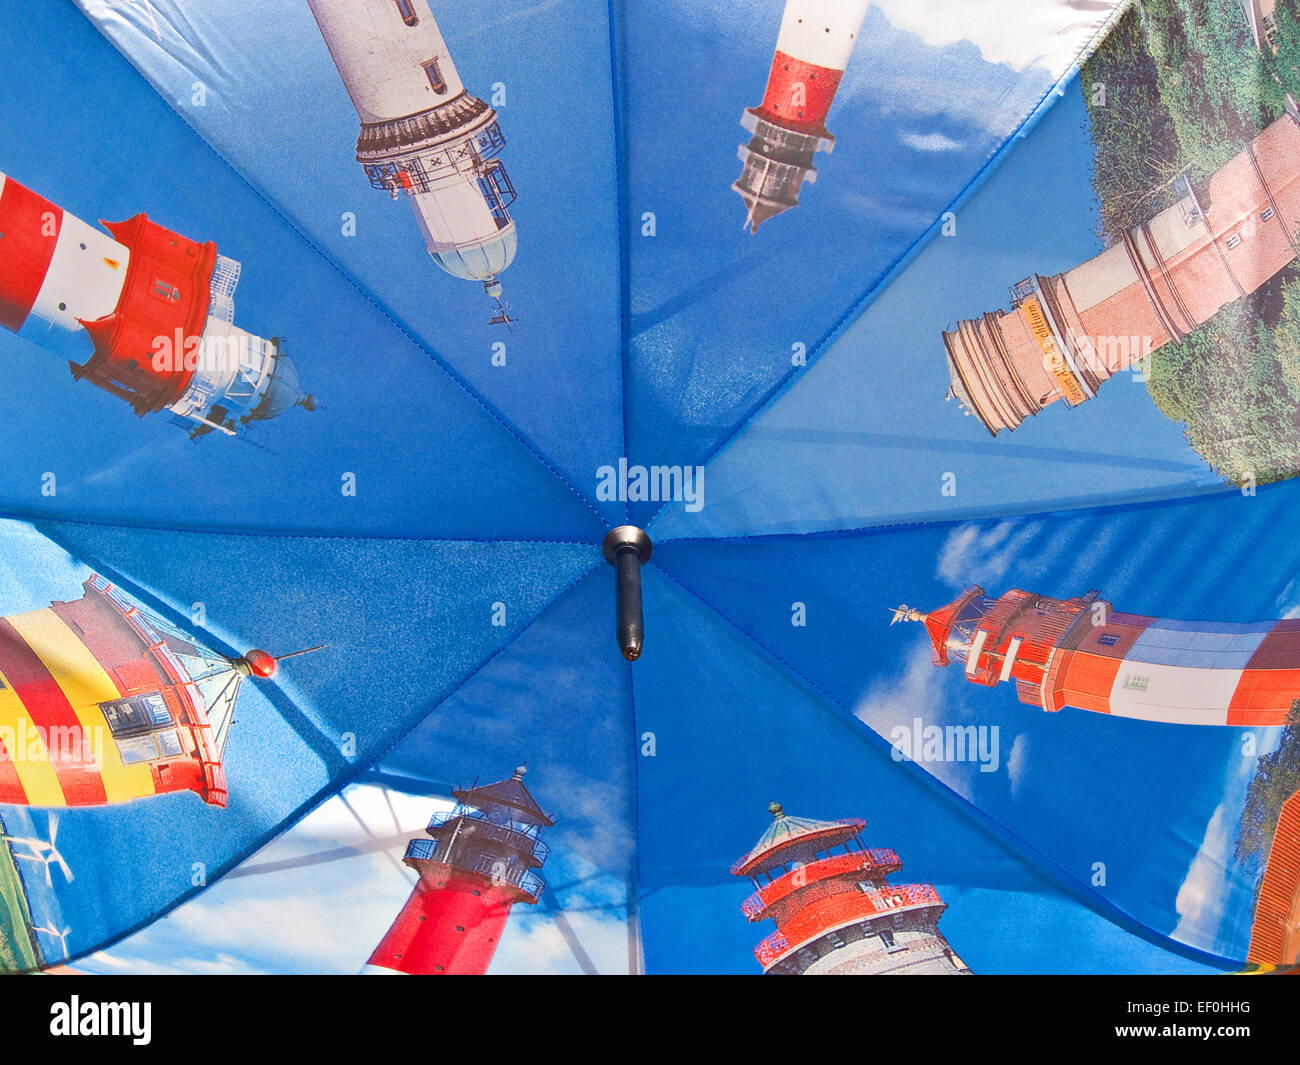 Regenschirm mit Leuchttürmen Stockfotografie - Alamy